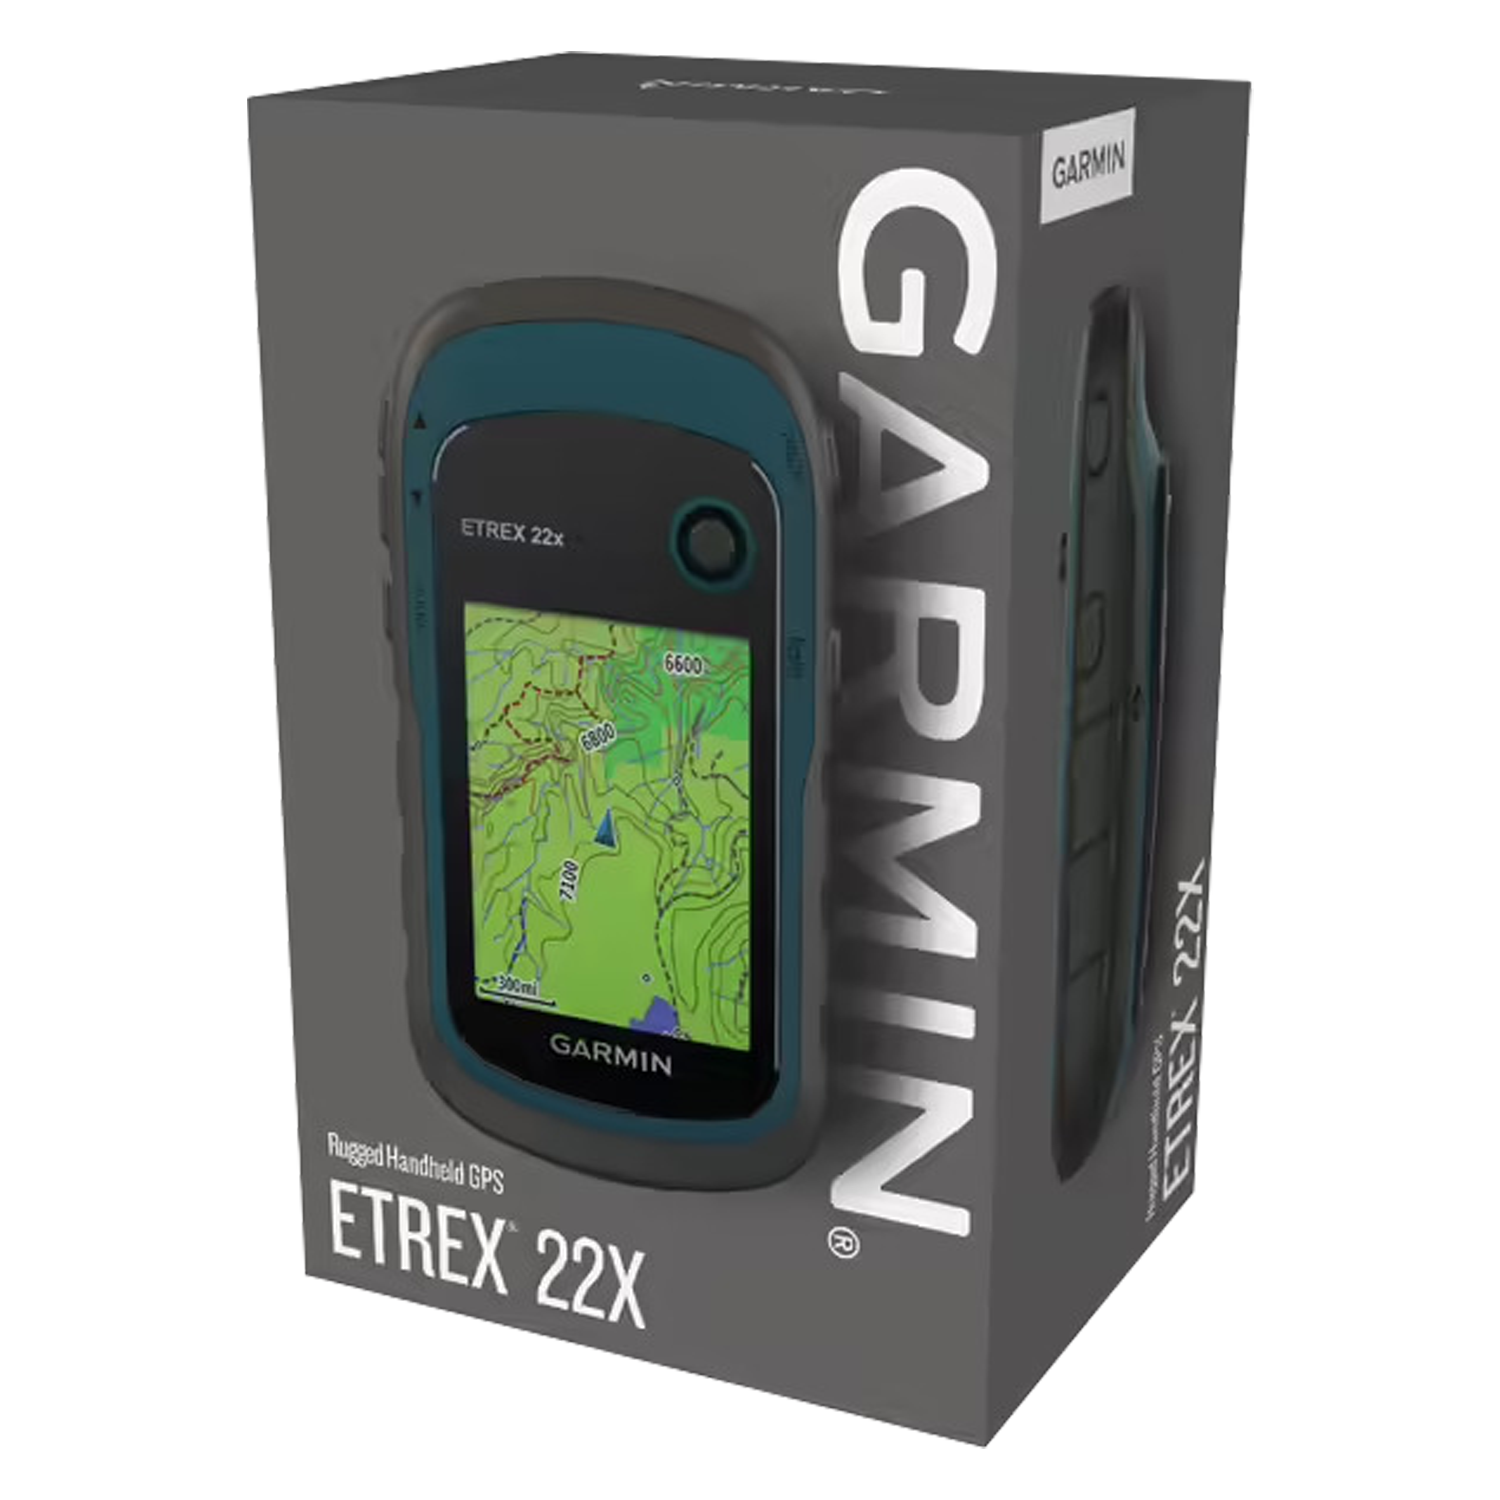 GPS Garmin Etrex 22X / Tela 2.2 / IPX7 / 8GB - Preto / Azul (010-02256-03)
